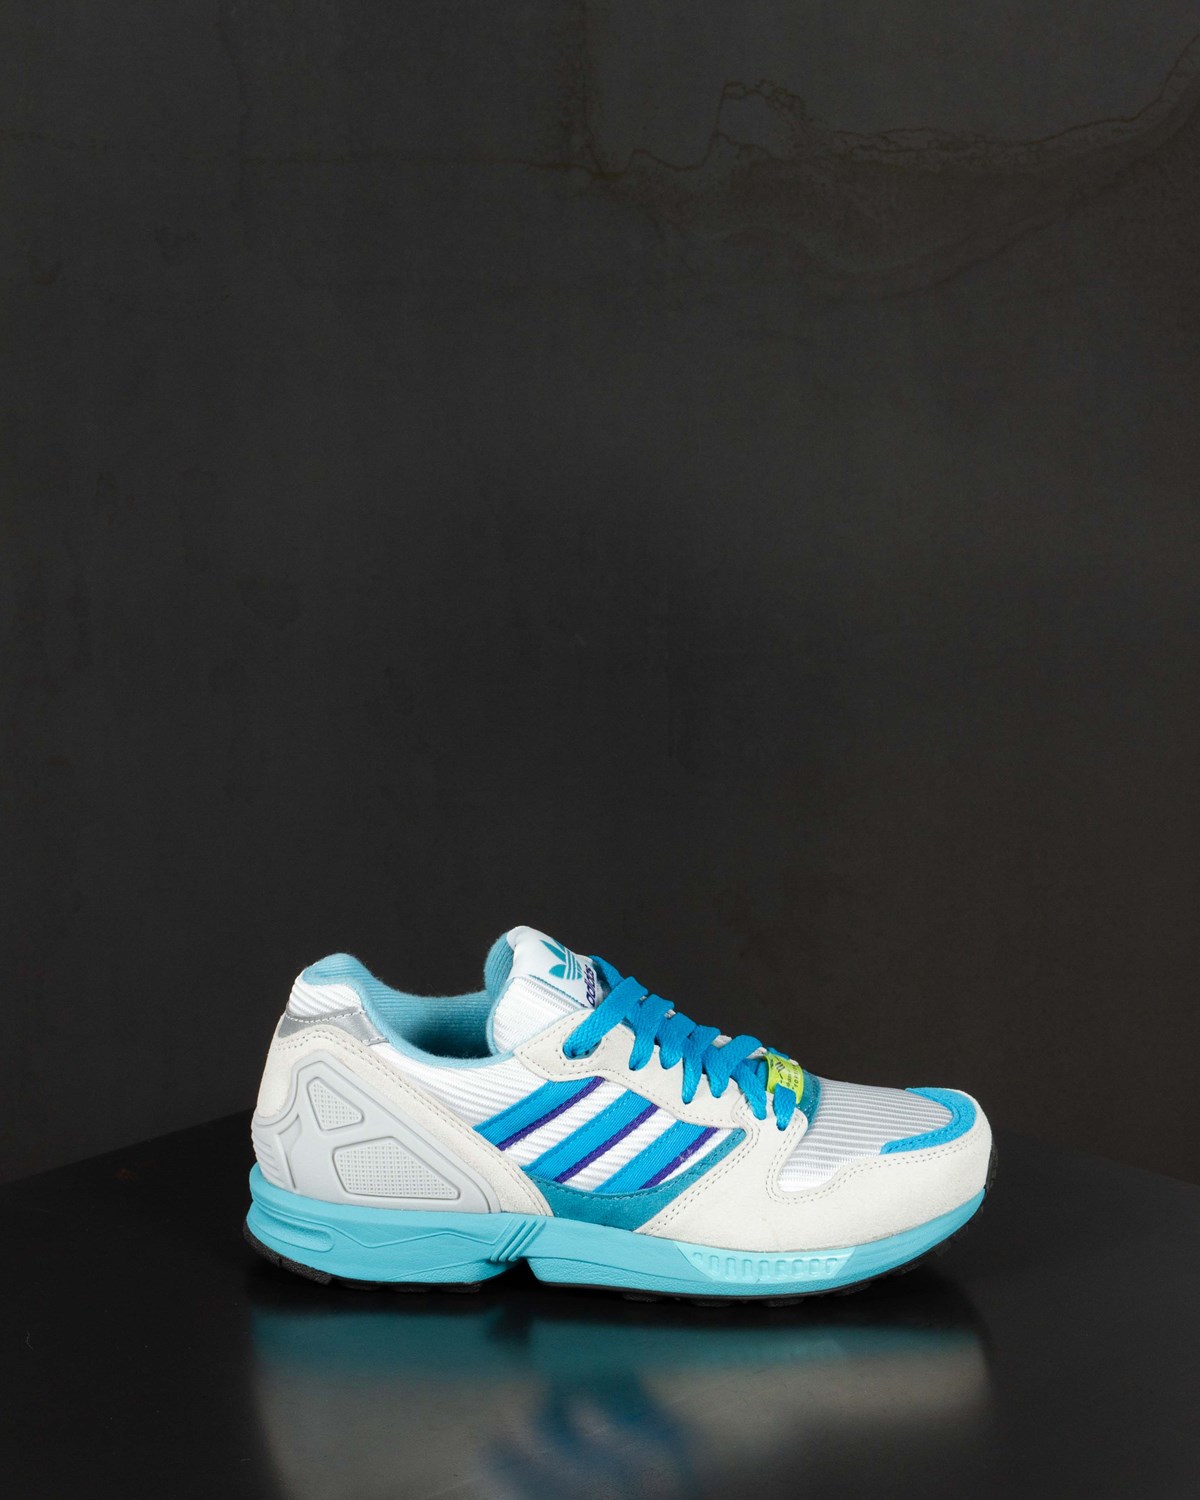 ZX 5000 Adidas Consortium Footwear Sneakers Blue